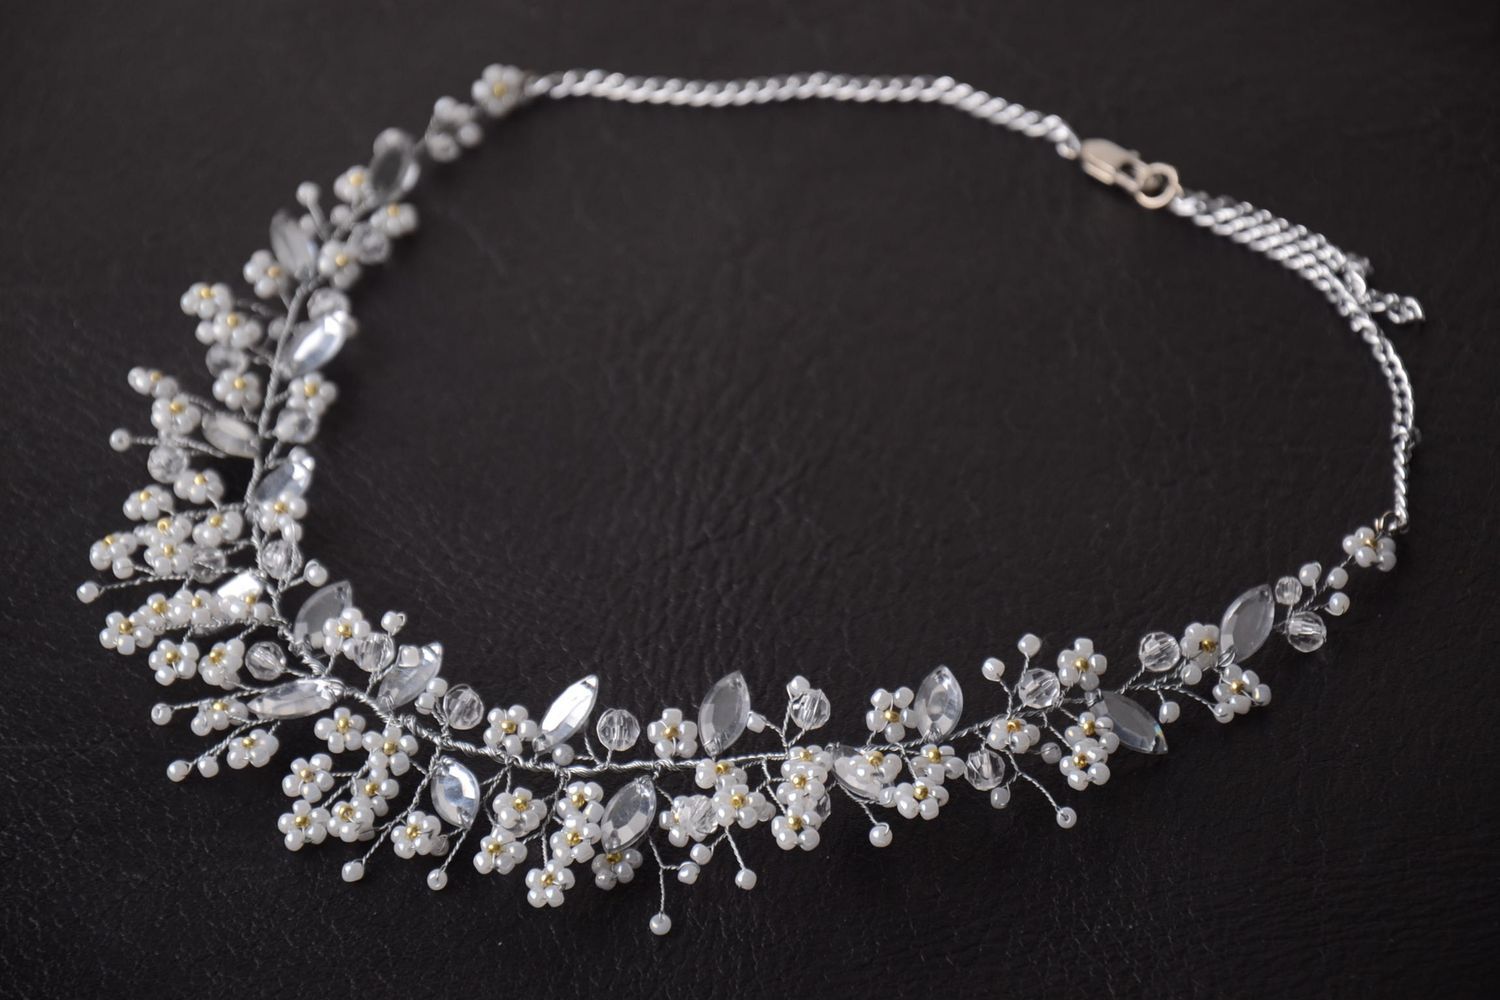 Handmade beaded accessory stylish wedding jewelry elegant necklace gift photo 1